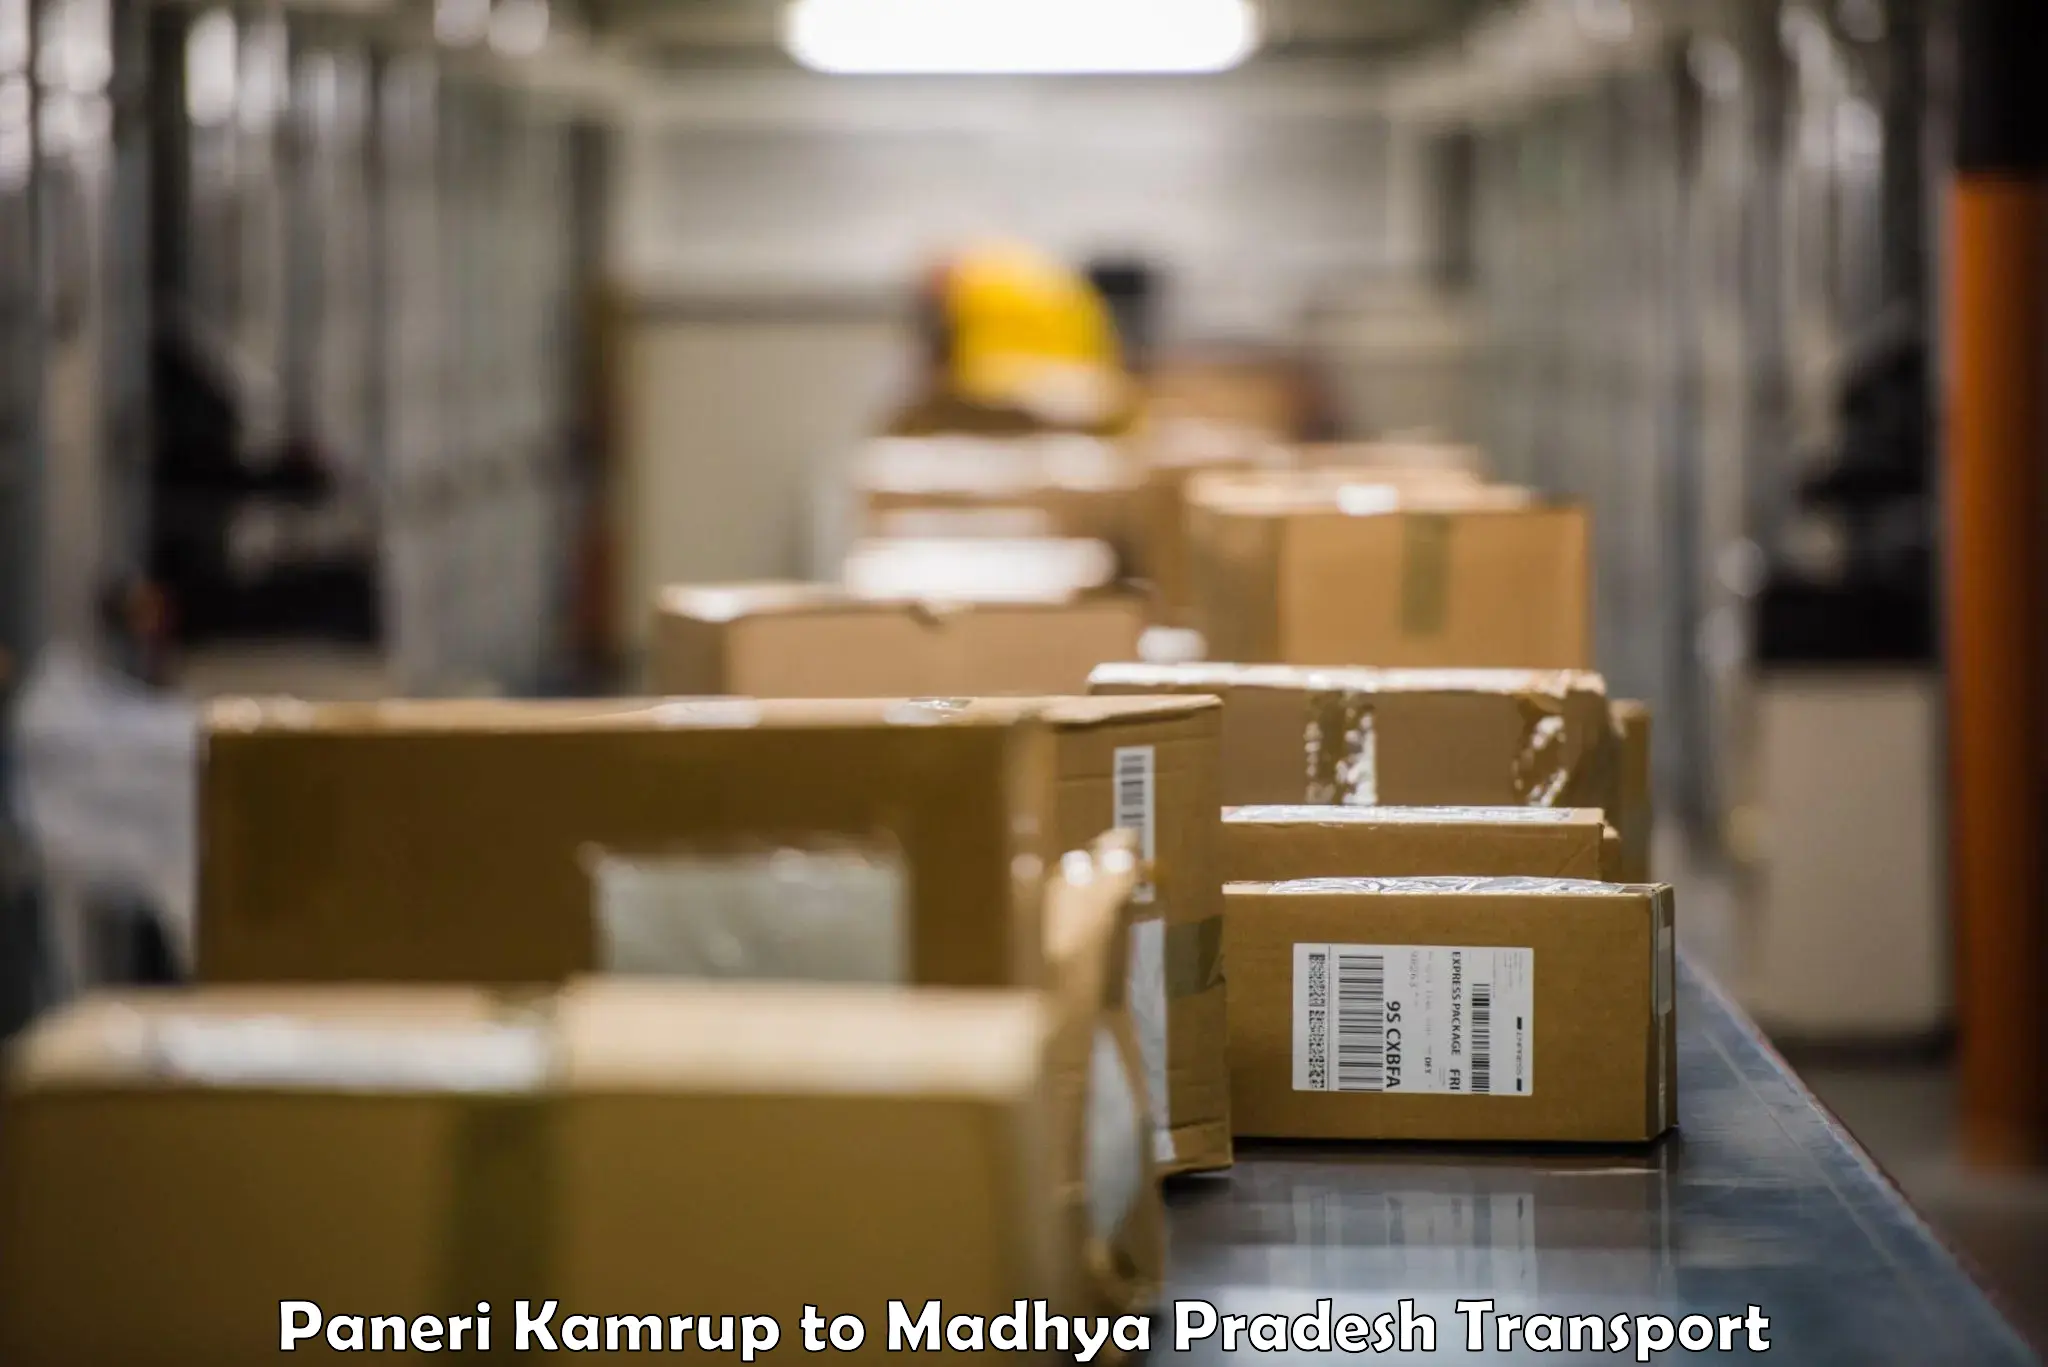 Cargo transport services Paneri Kamrup to Garh Rewa